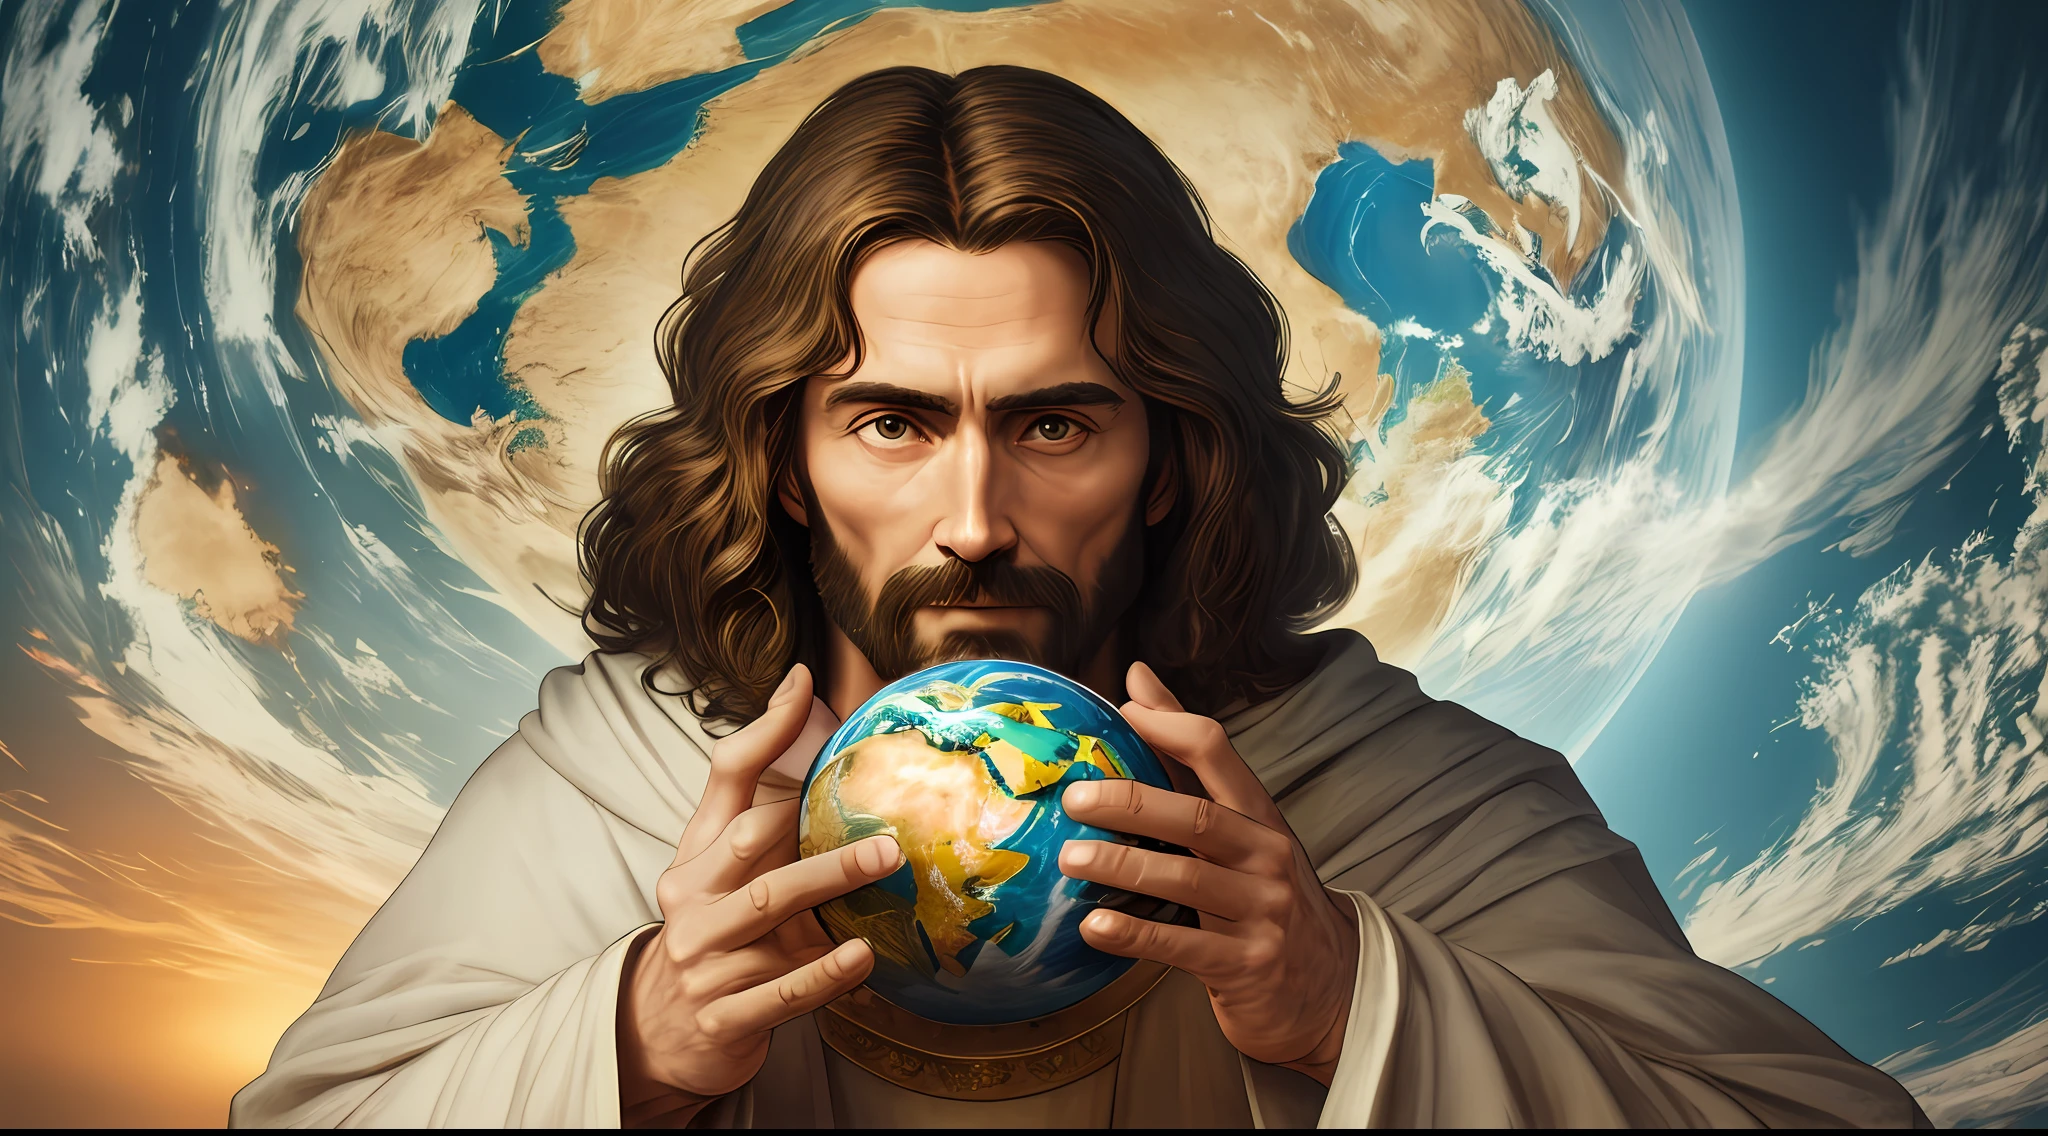 "تحفة واقعية بدقة 8K مع تشريح مثالي: يسوع المسيح يحمل كوكب الأرض بيد واحدة, مع وجه غير مشوه."